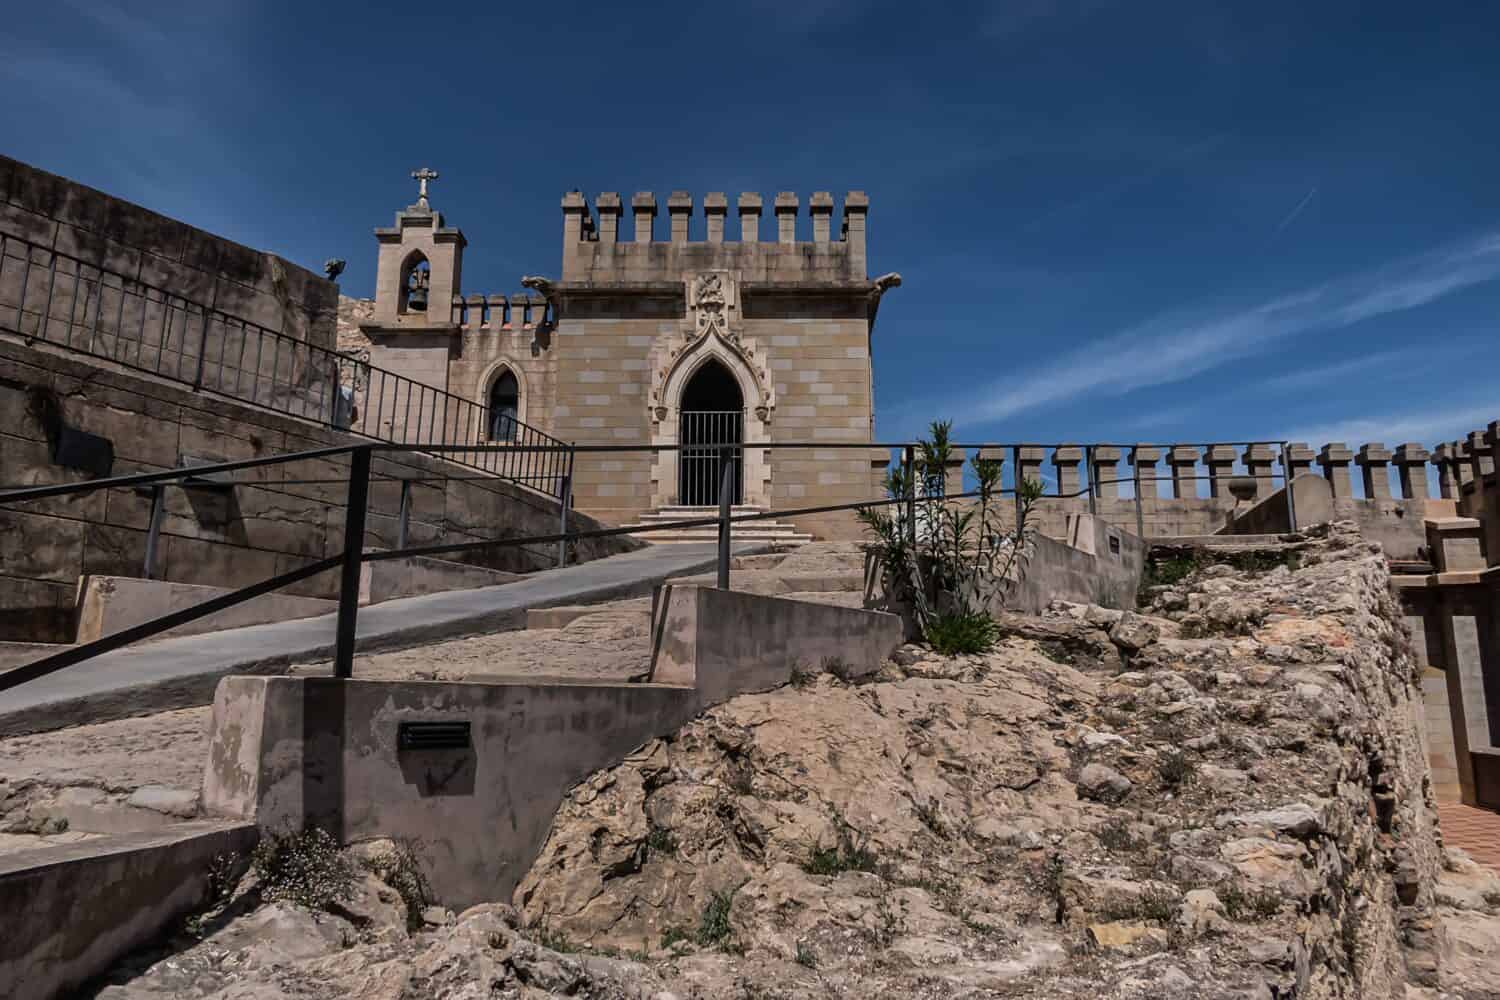 Castello di Xativa o Castillo de Xativa - antica fortificazione sull'antica via Augusta in Spagna.  Edificio neogotico della Cappella di Sant Jordi (XIV – XV secolo).  Xativa, Spagna, Europa.